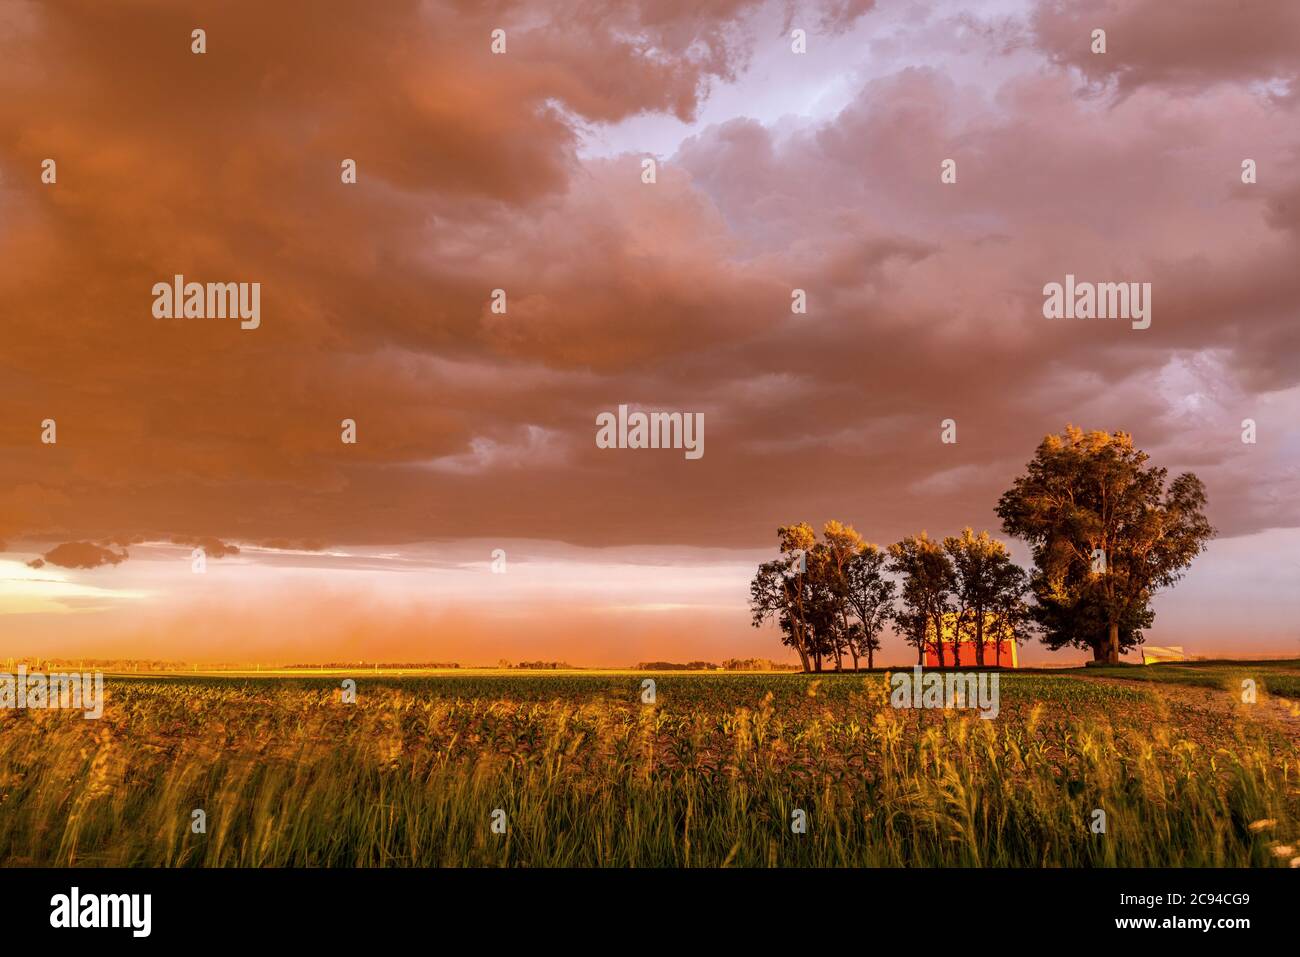 Al tramonto, una grande tempesta di polvere soffia su un campo e una casa, che si fonde con una vivace tonalità arancione profonda attraverso l'orizzonte. Foto Stock